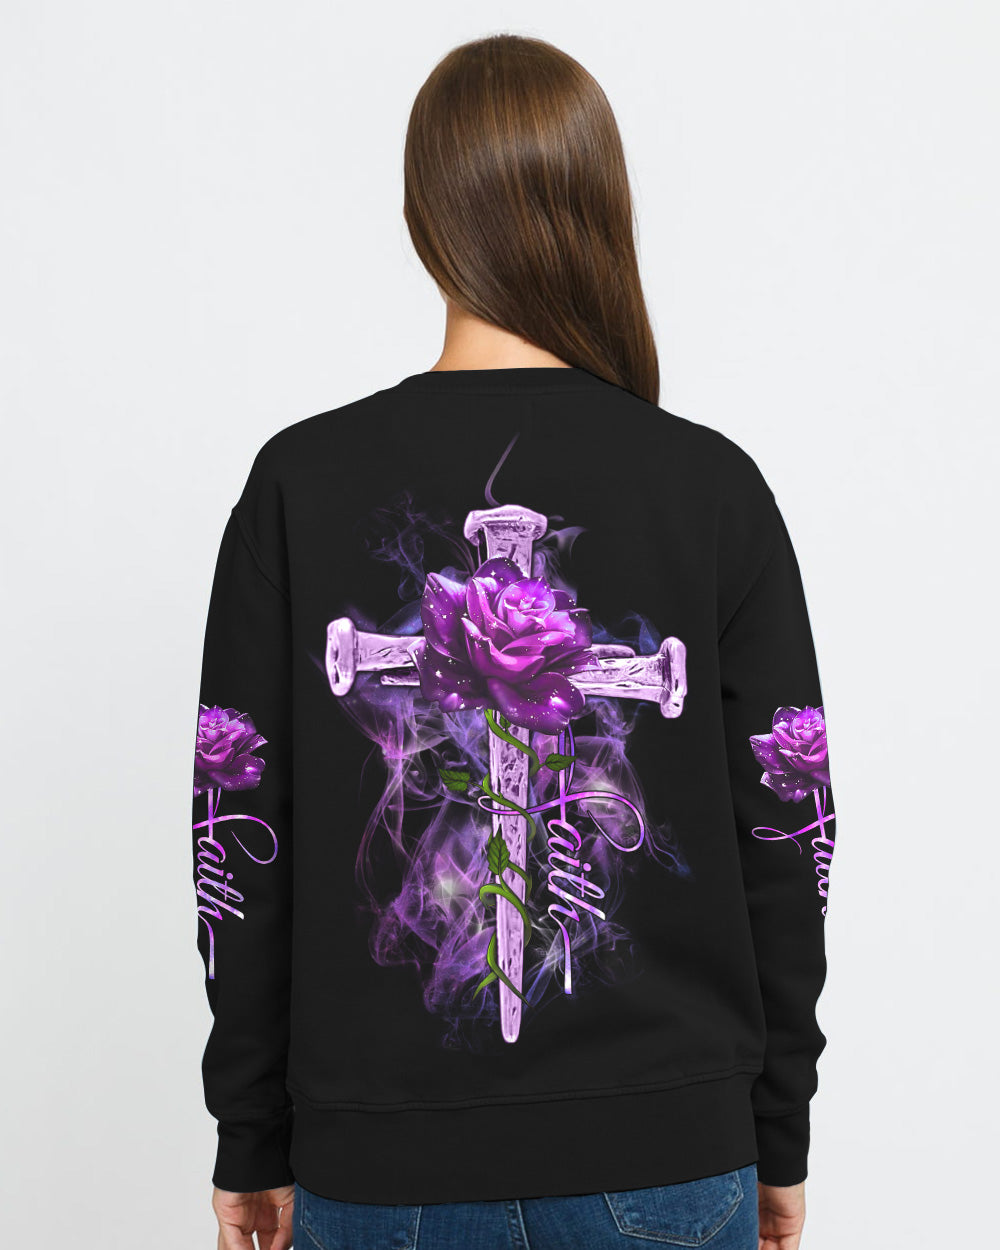 Vintage Cross Purple Rose Smoke Cross Women's Christian Sweatshirt